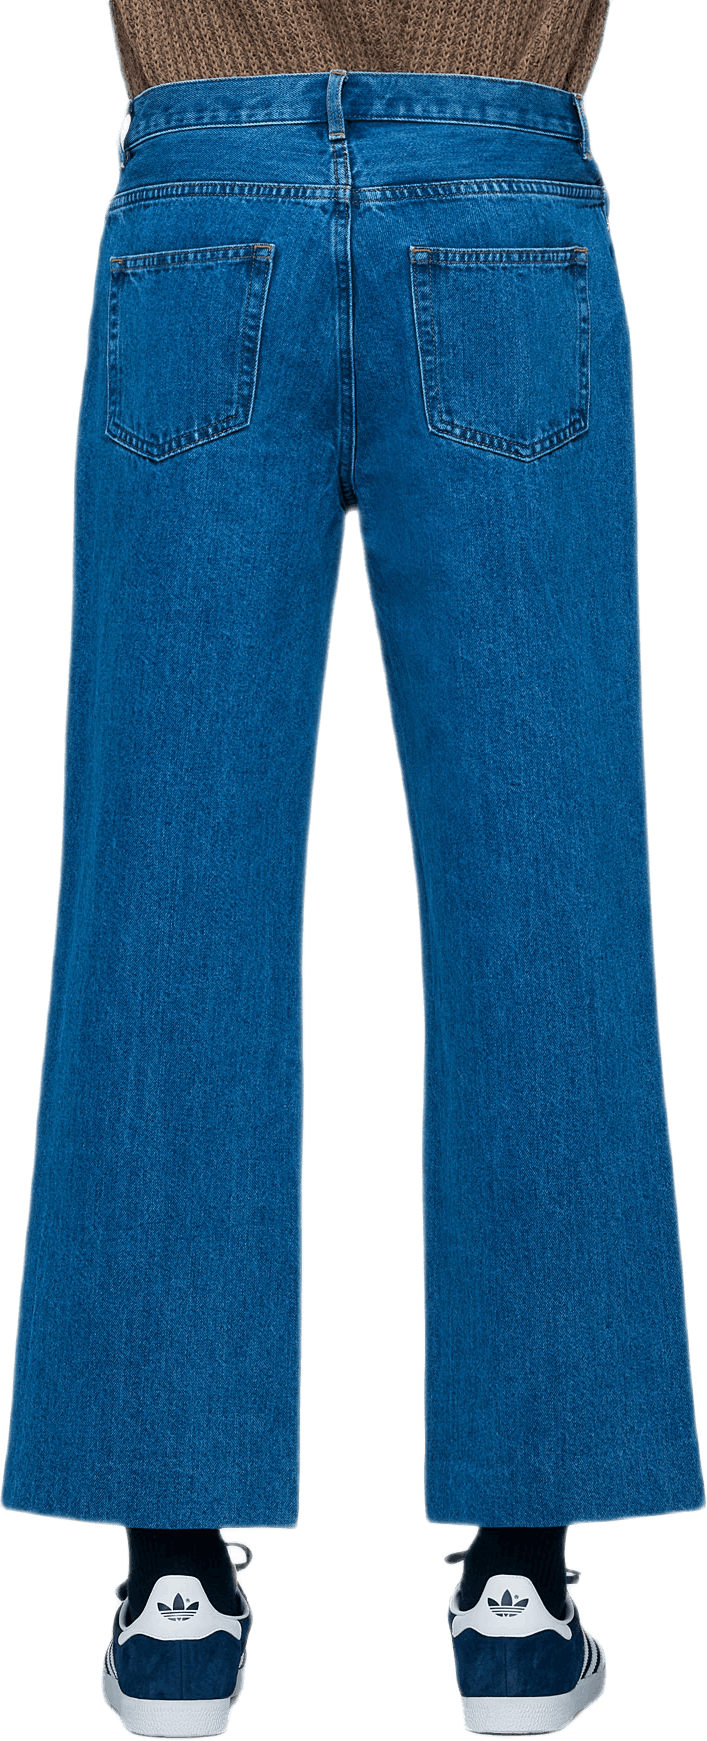 Sailor Jeans Blue